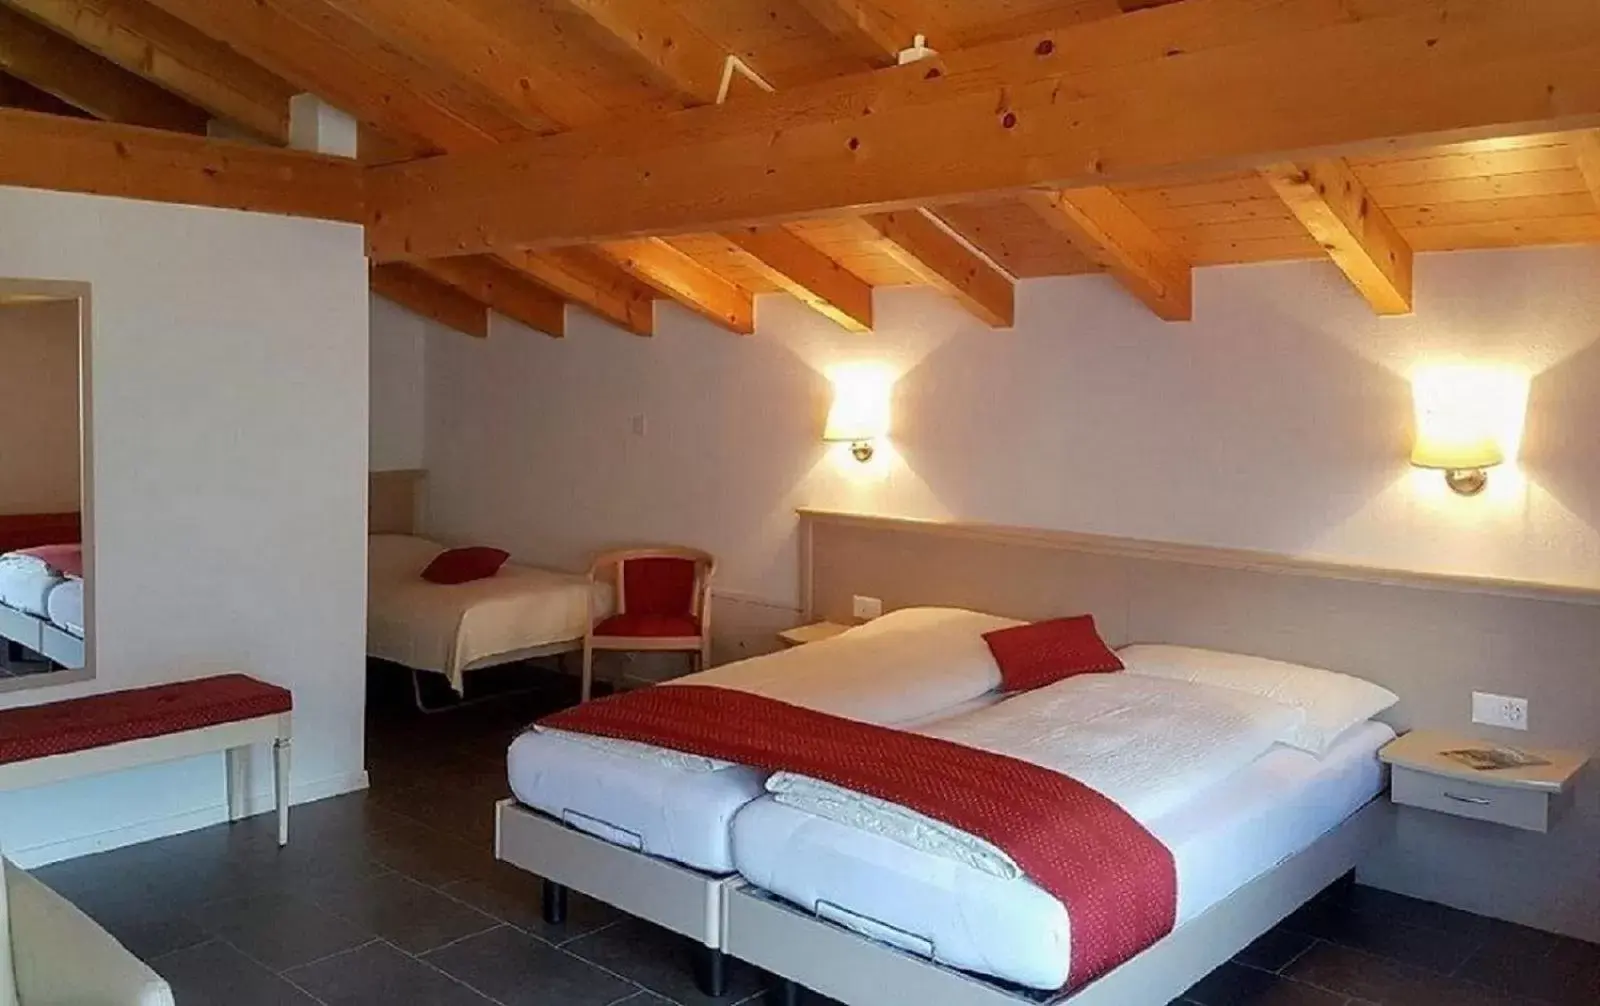 Photo of the whole room, Bed in Chalet-Gafri - BnB - Frühstückspension - Service wie im Hotel